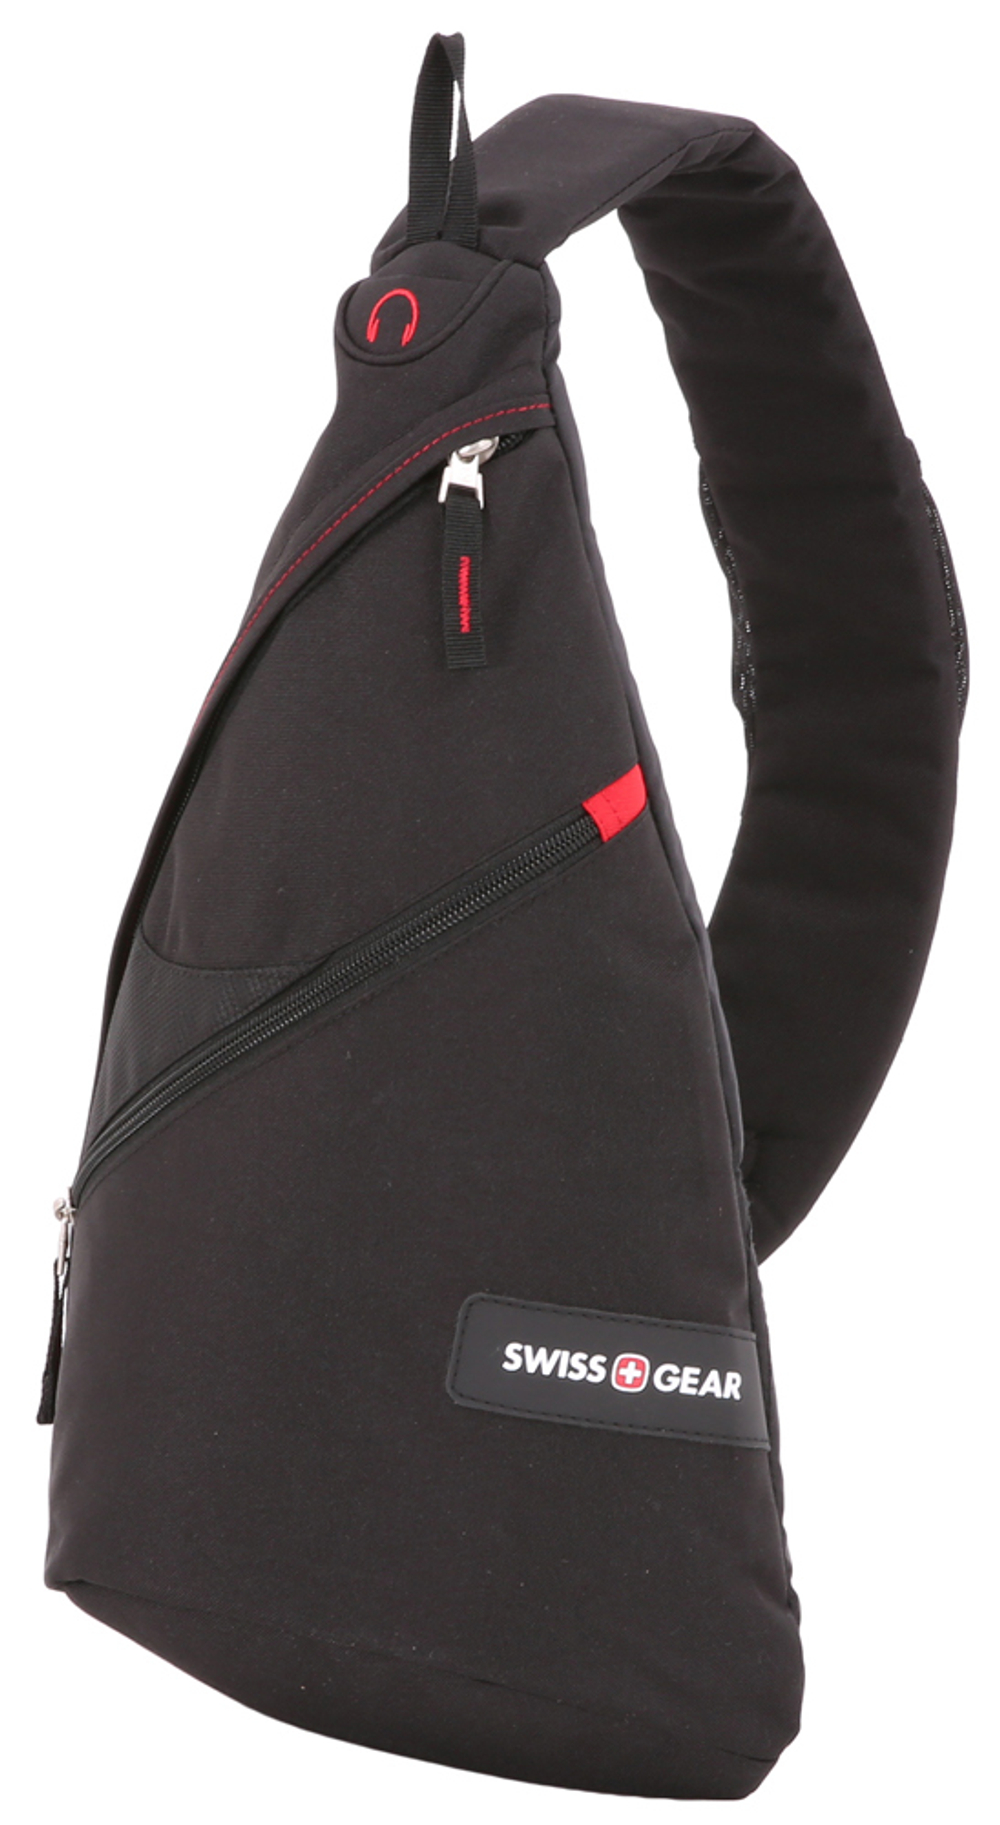 Качественный с гарантией прочный швейцарский рюкзак с одной лямкой (плечевым ремнём) чёрный с красным объёмом 7 л из полиэстера 900D с дополнительным отделением с карманом для MP3-плеера и отверстием для наушников WENGER 18302130